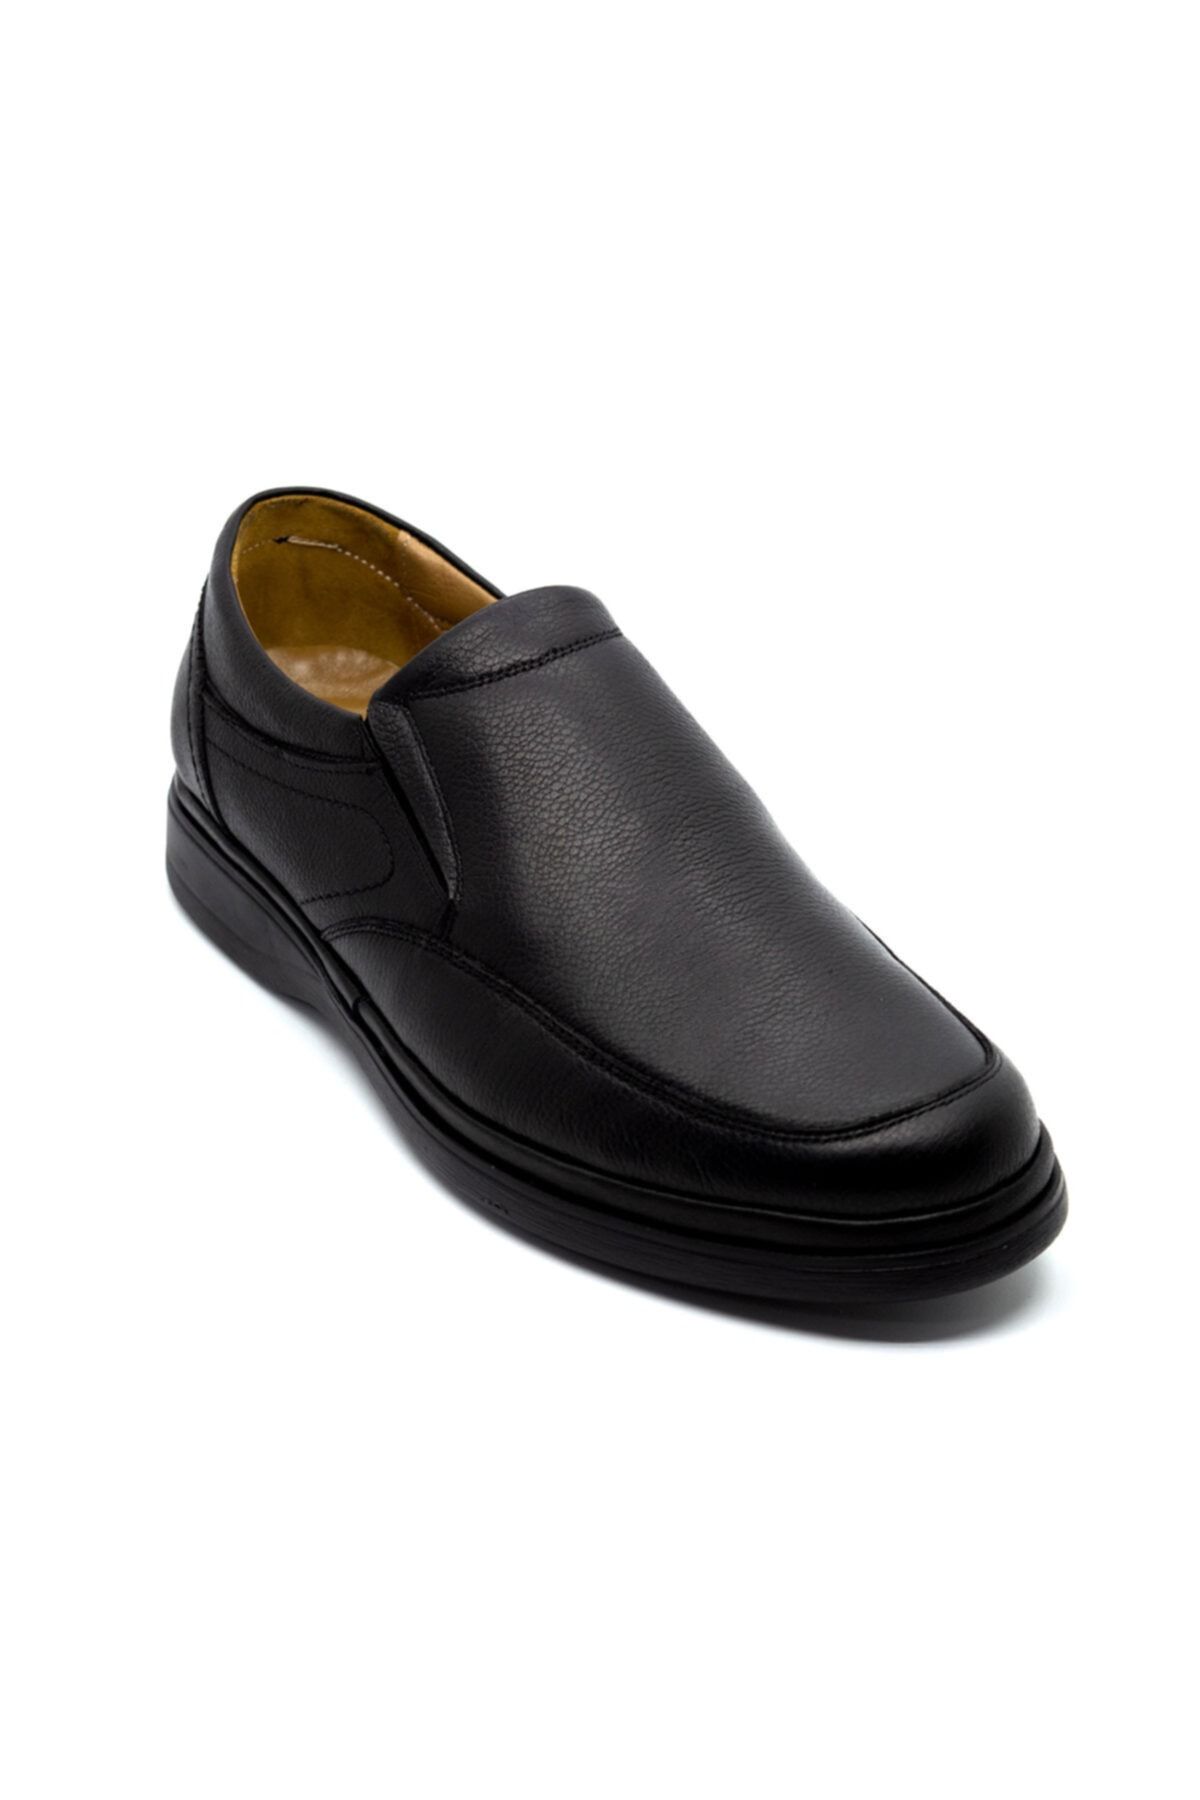 Onur Ayakkabı Erkek Siyah Hakiki Deri Ortopedik Taban Günlük Ayakkabı